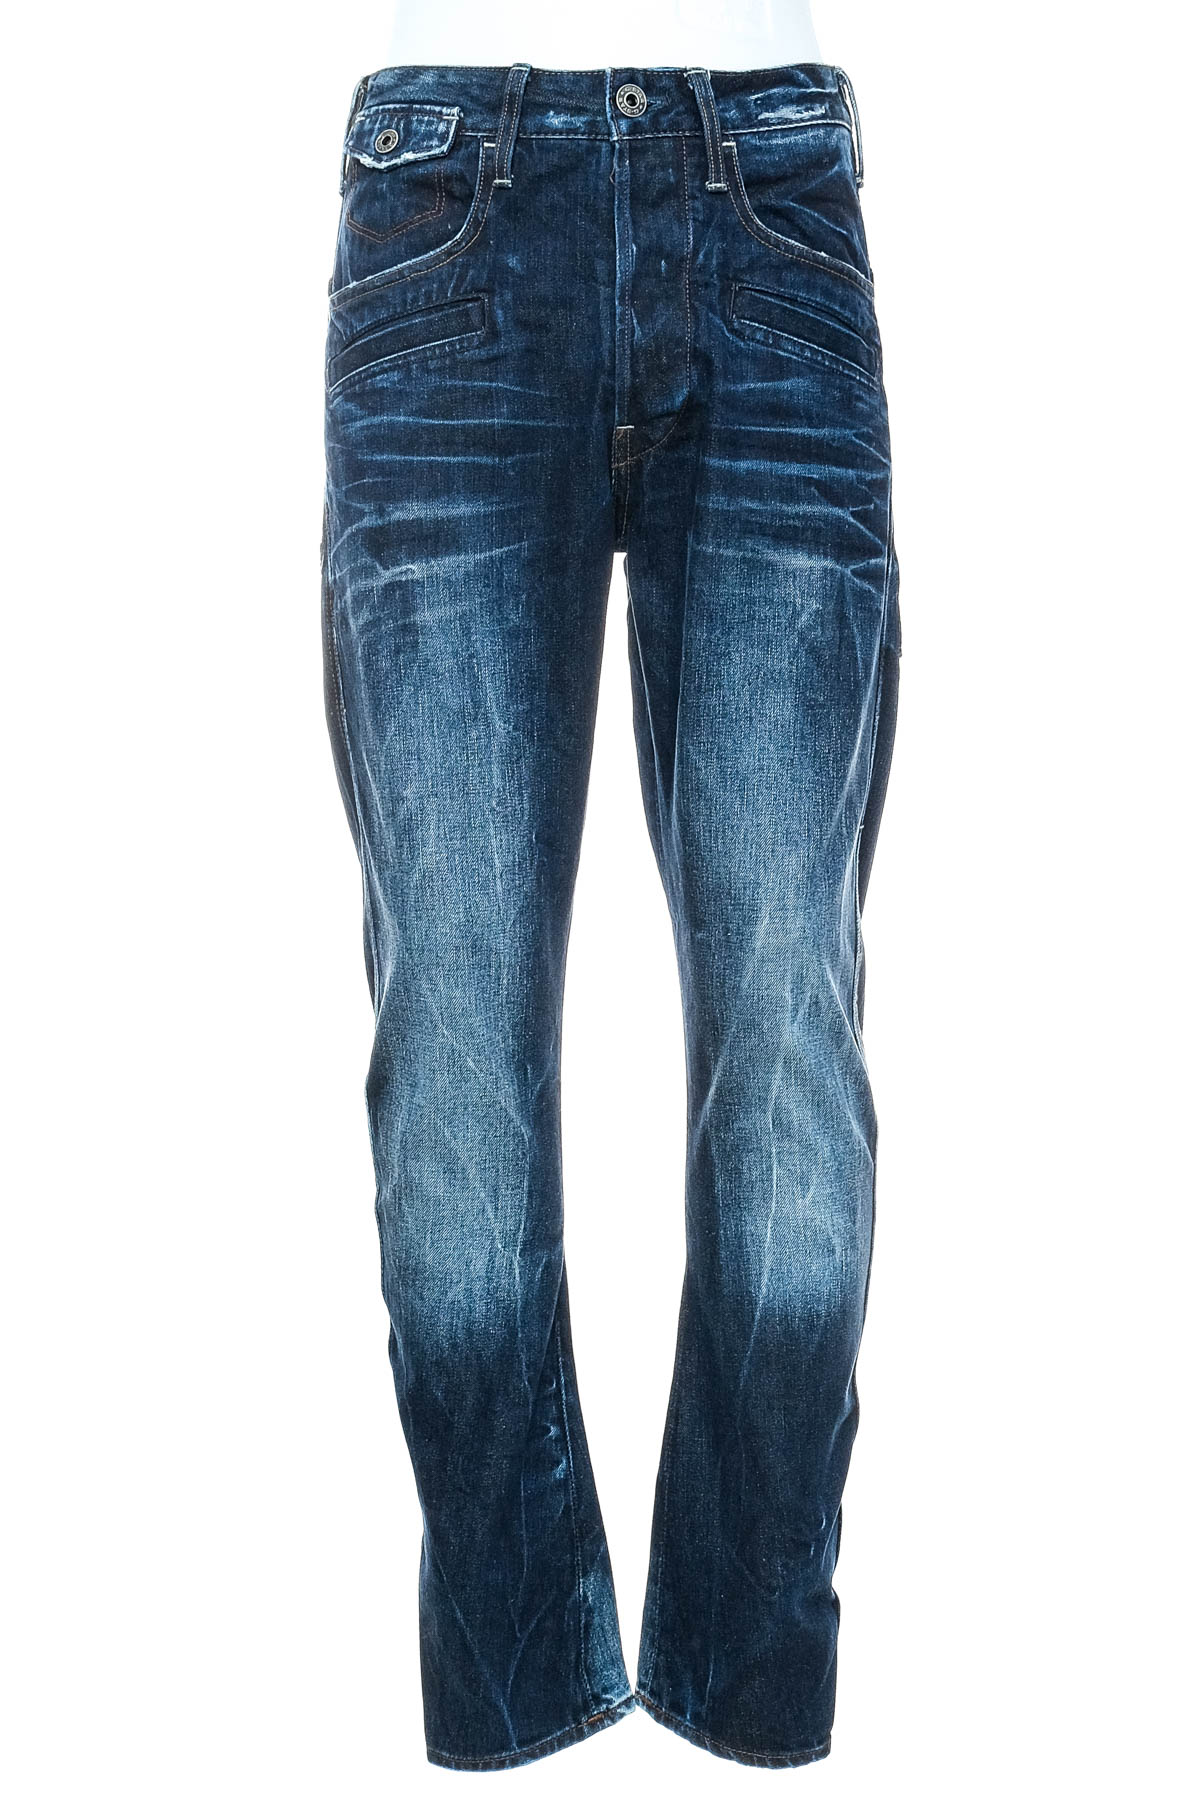 Men's jeans - G-STAR - 0